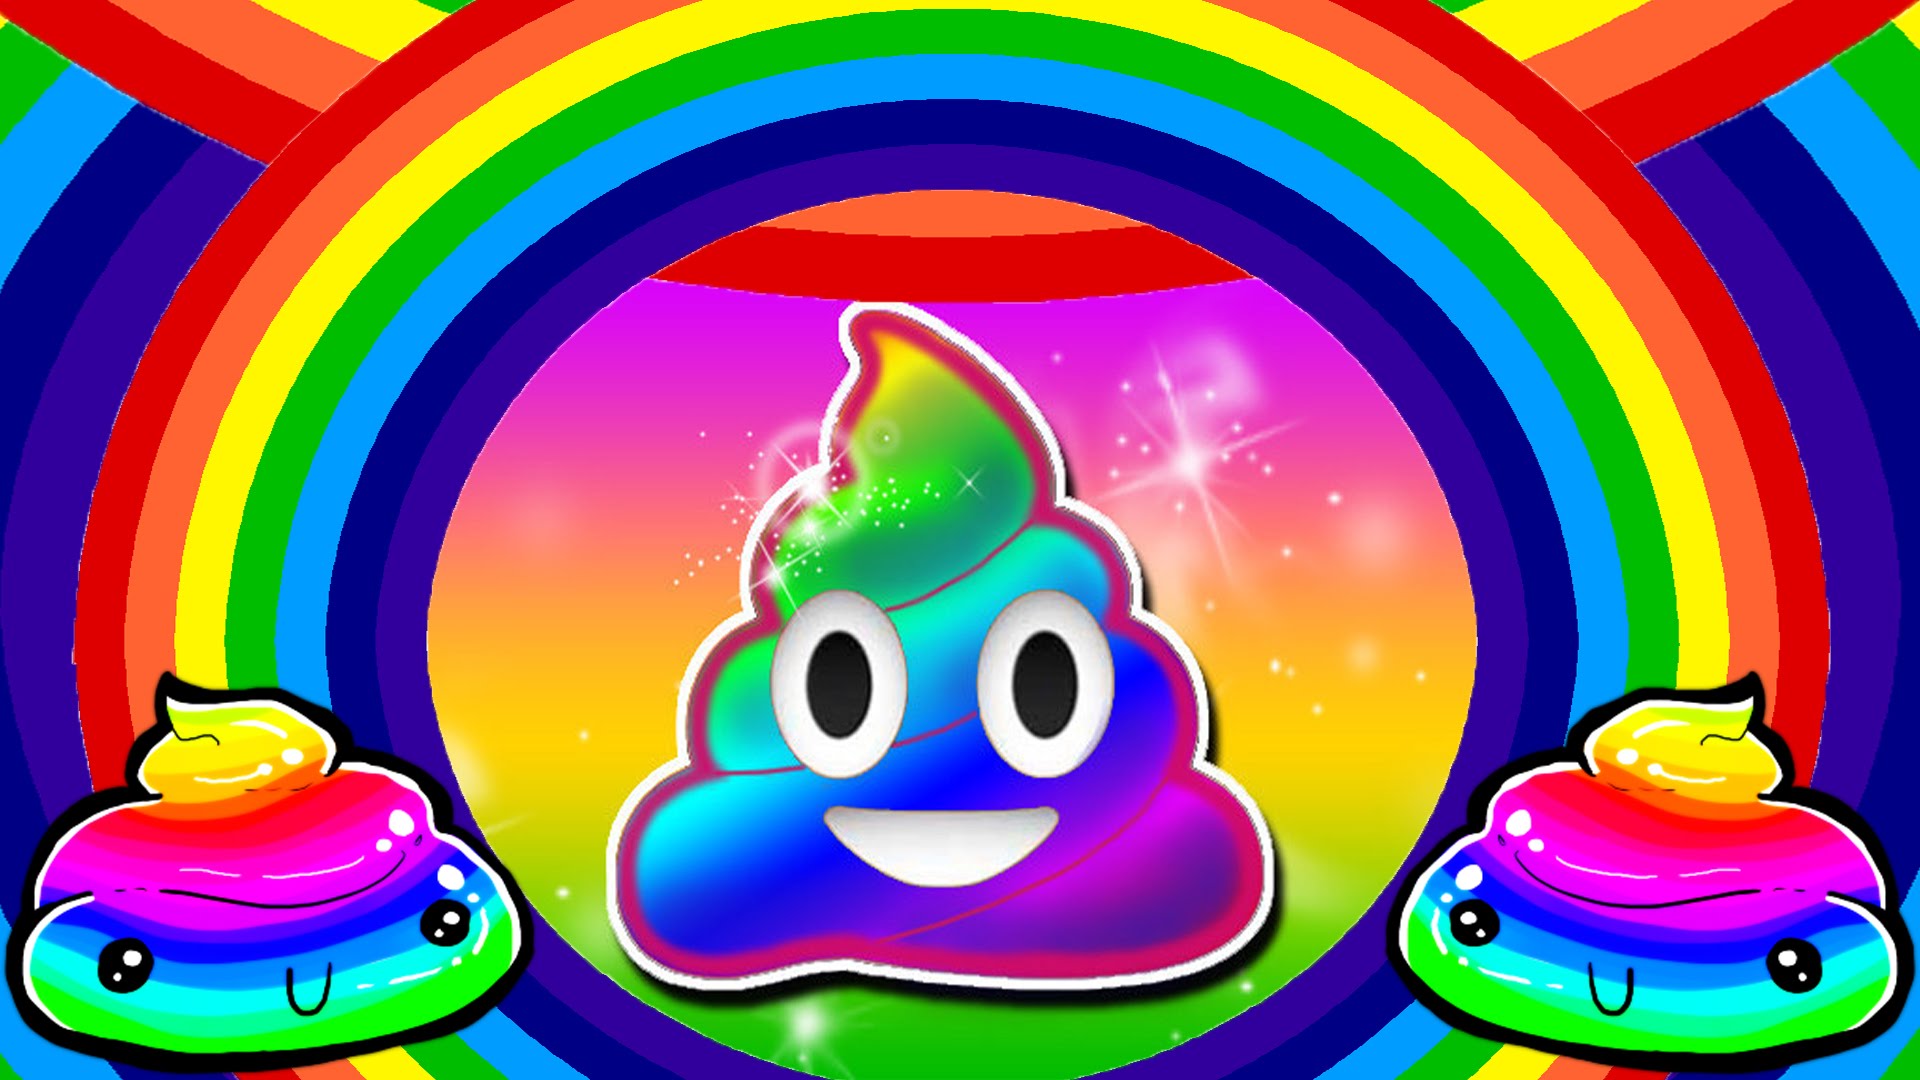 Poop On A Rainbow Pixshark Image Galleries